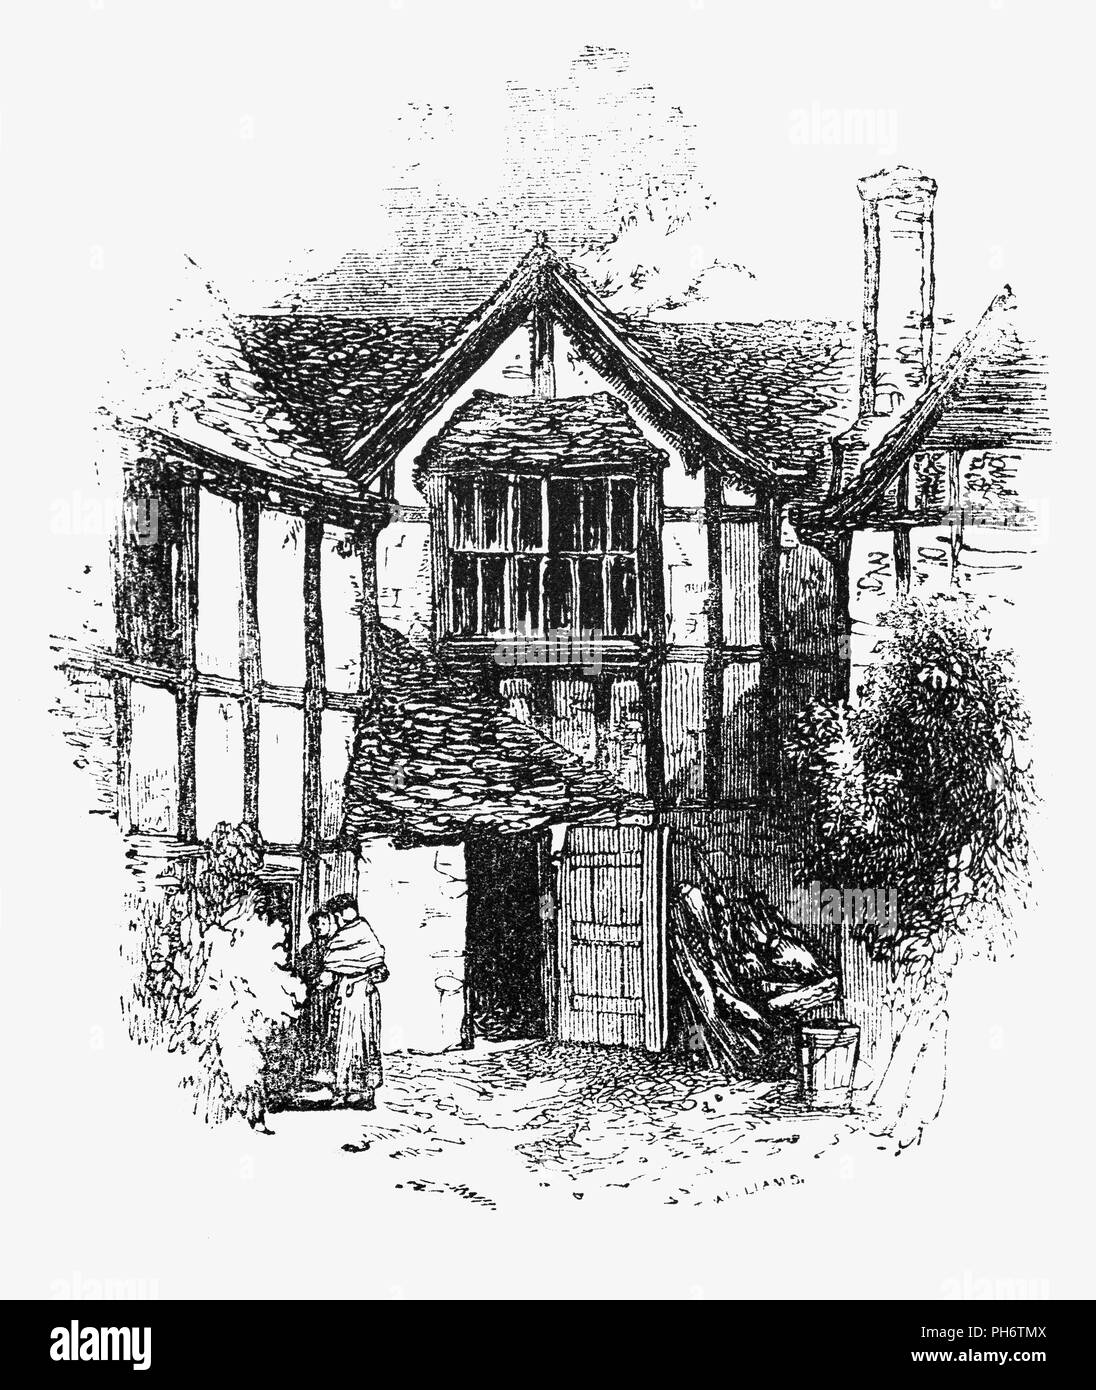 Eine Tudor House Courtyard in Evesham, einer Stadt in Worcestershire, England In einem typischen Tudor House das Gewicht des Hauses wurde auf einem hölzernen Rahmen durchgeführt. Der Raum zwischen den Holzbalken wurde in entweder mit Ziegel- oder Gips gefüllt. Ziegel war teuer, also Gips als Füllung zwischen den Balken in kleineren Häusern verwendet wurde. Der Gips wird die weiß getünchten Häuser, die ihren charakteristischen schwarz-weißen Aussehen. Stockfoto